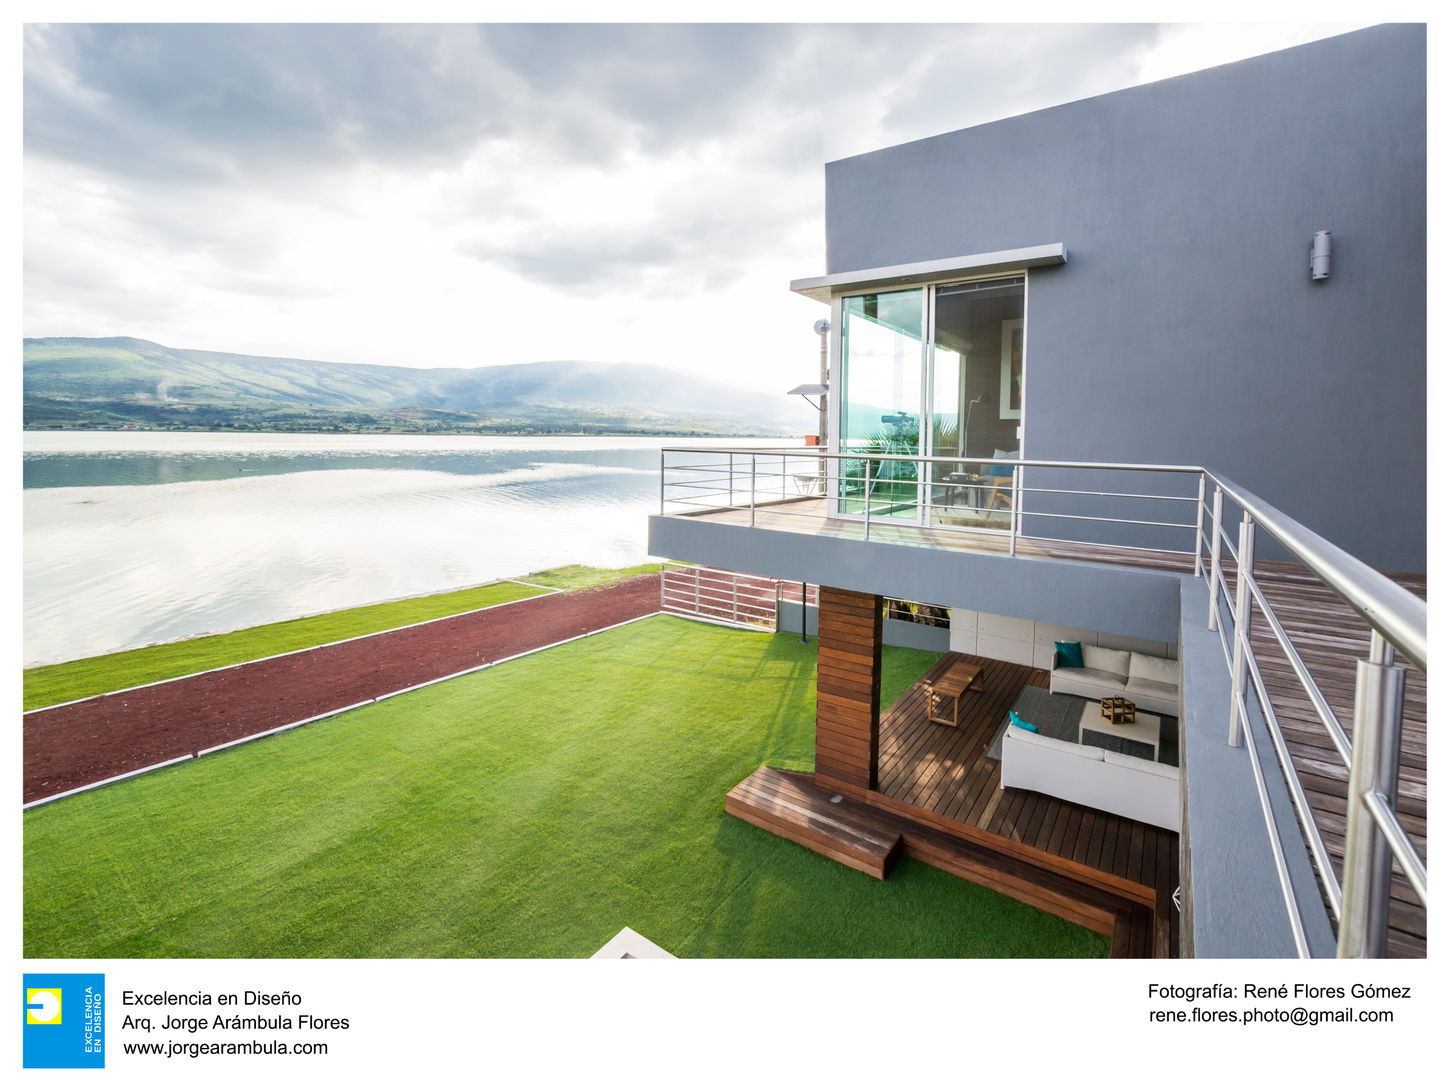 Casa Vista Lago, Excelencia en Diseño Excelencia en Diseño Vườn phong cách hiện đại